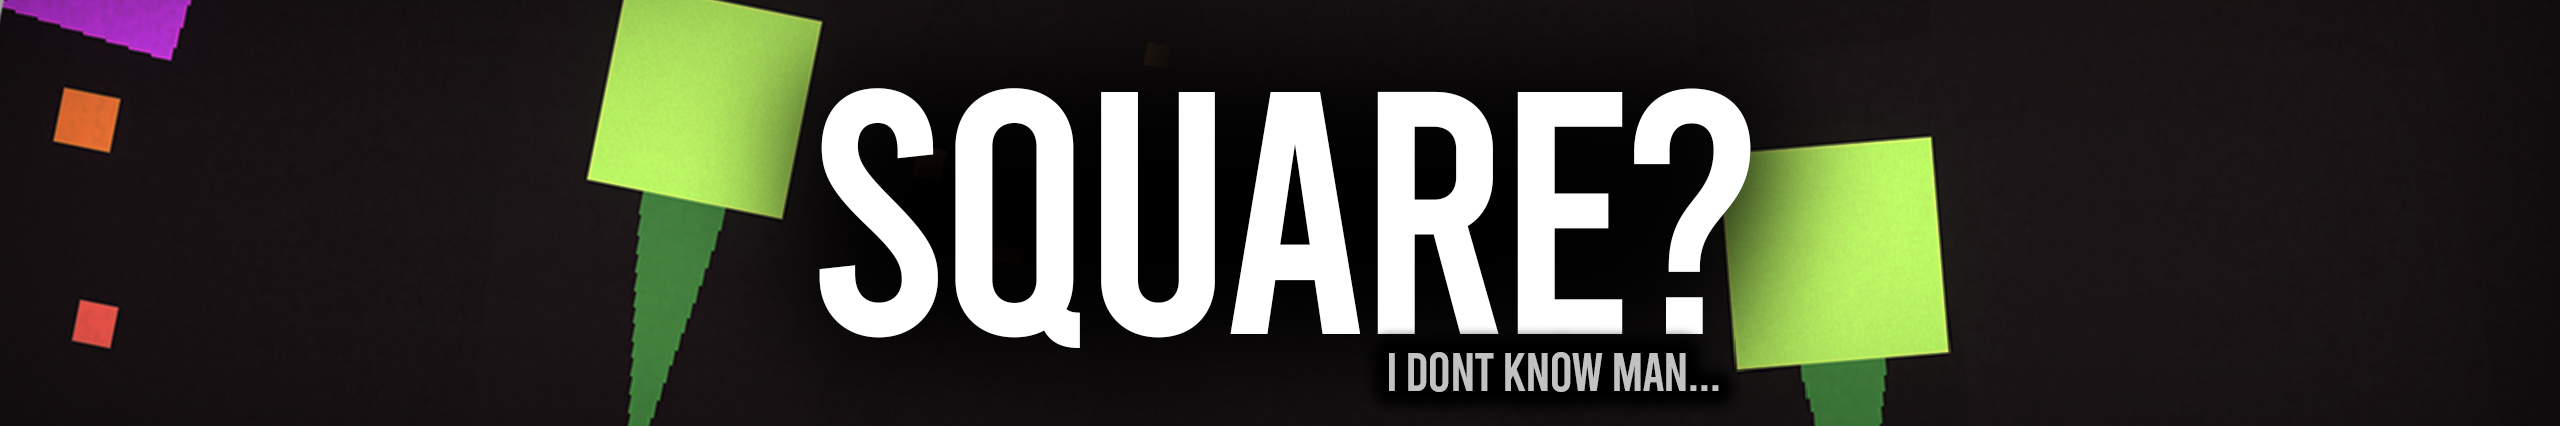 Square?